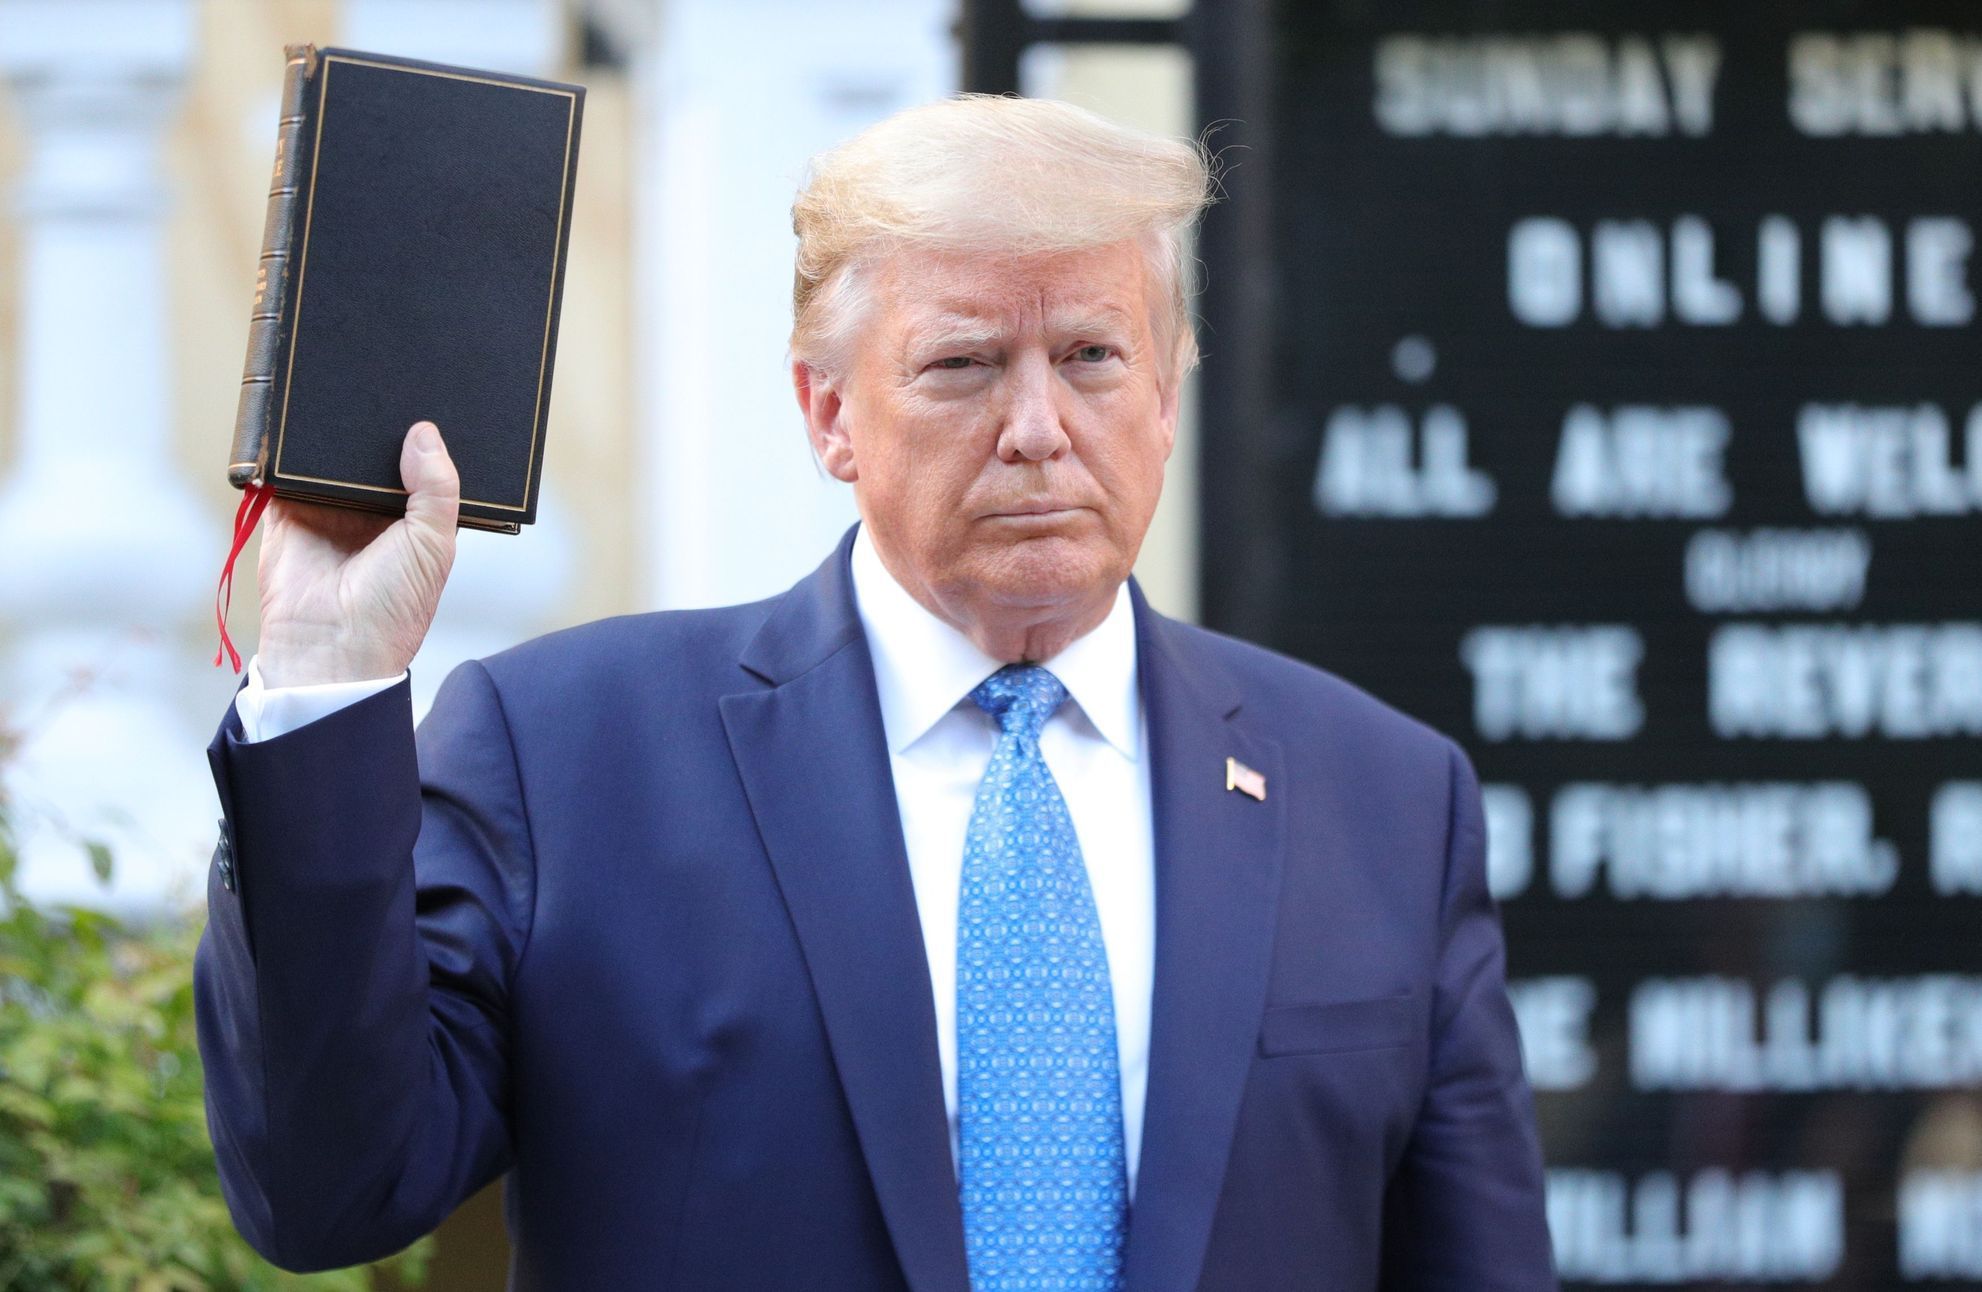 Donald Trump, bible, USA